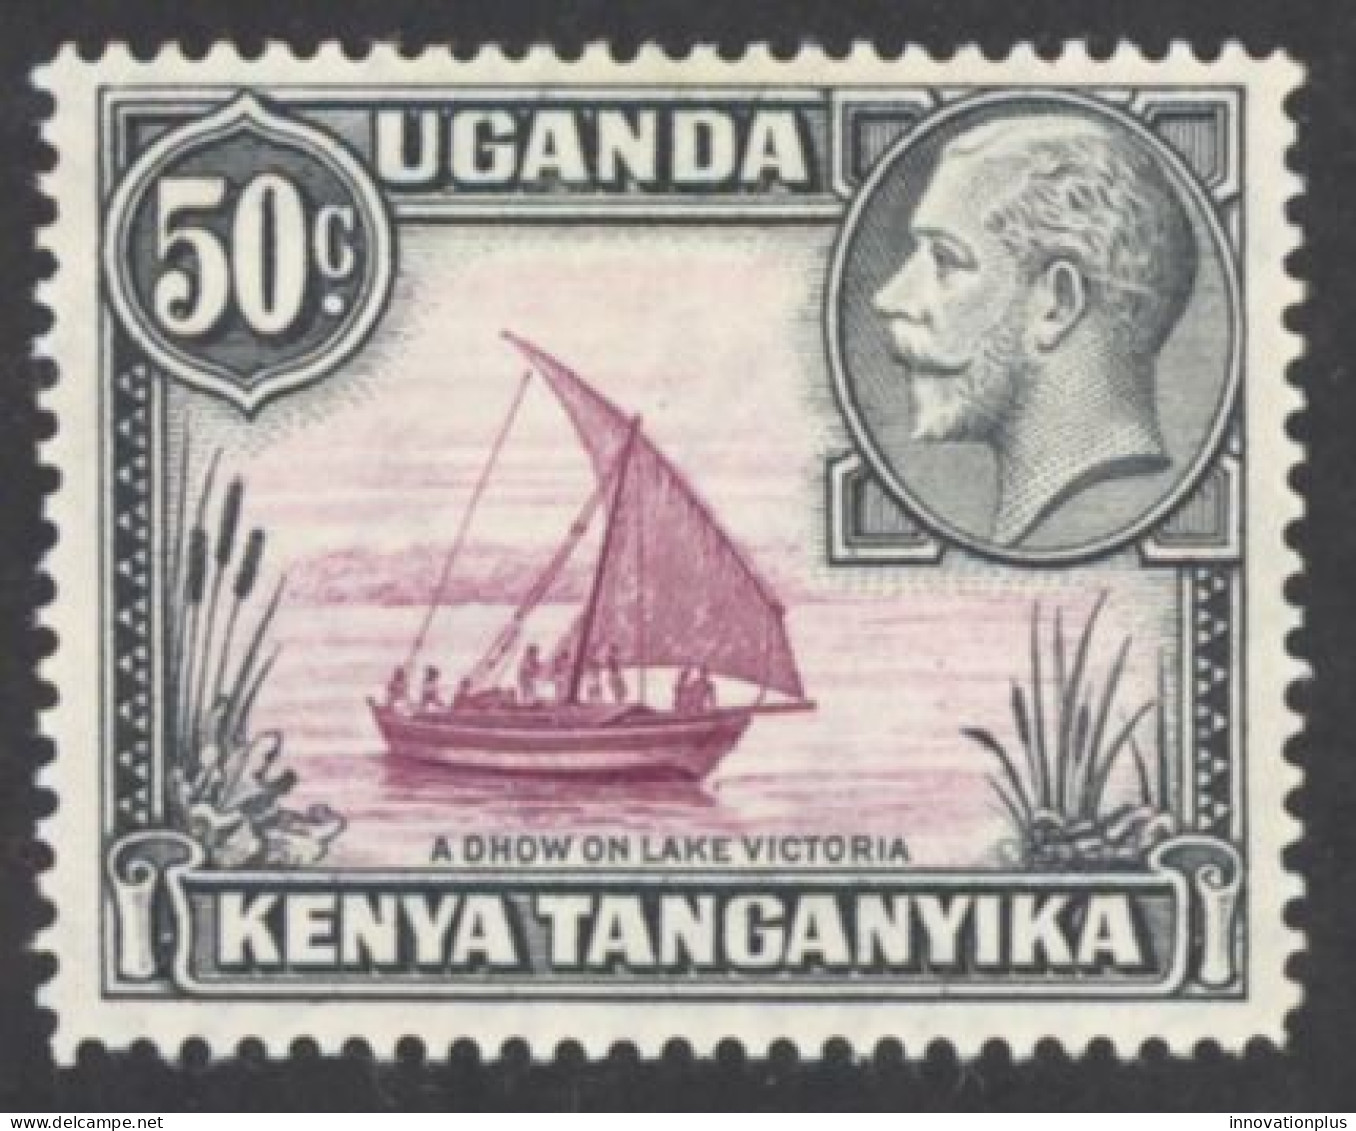 Kenya, Uganda, Tanzania Sc# 52 MH 1935 50c Definitives - Kenya, Uganda & Tanzania